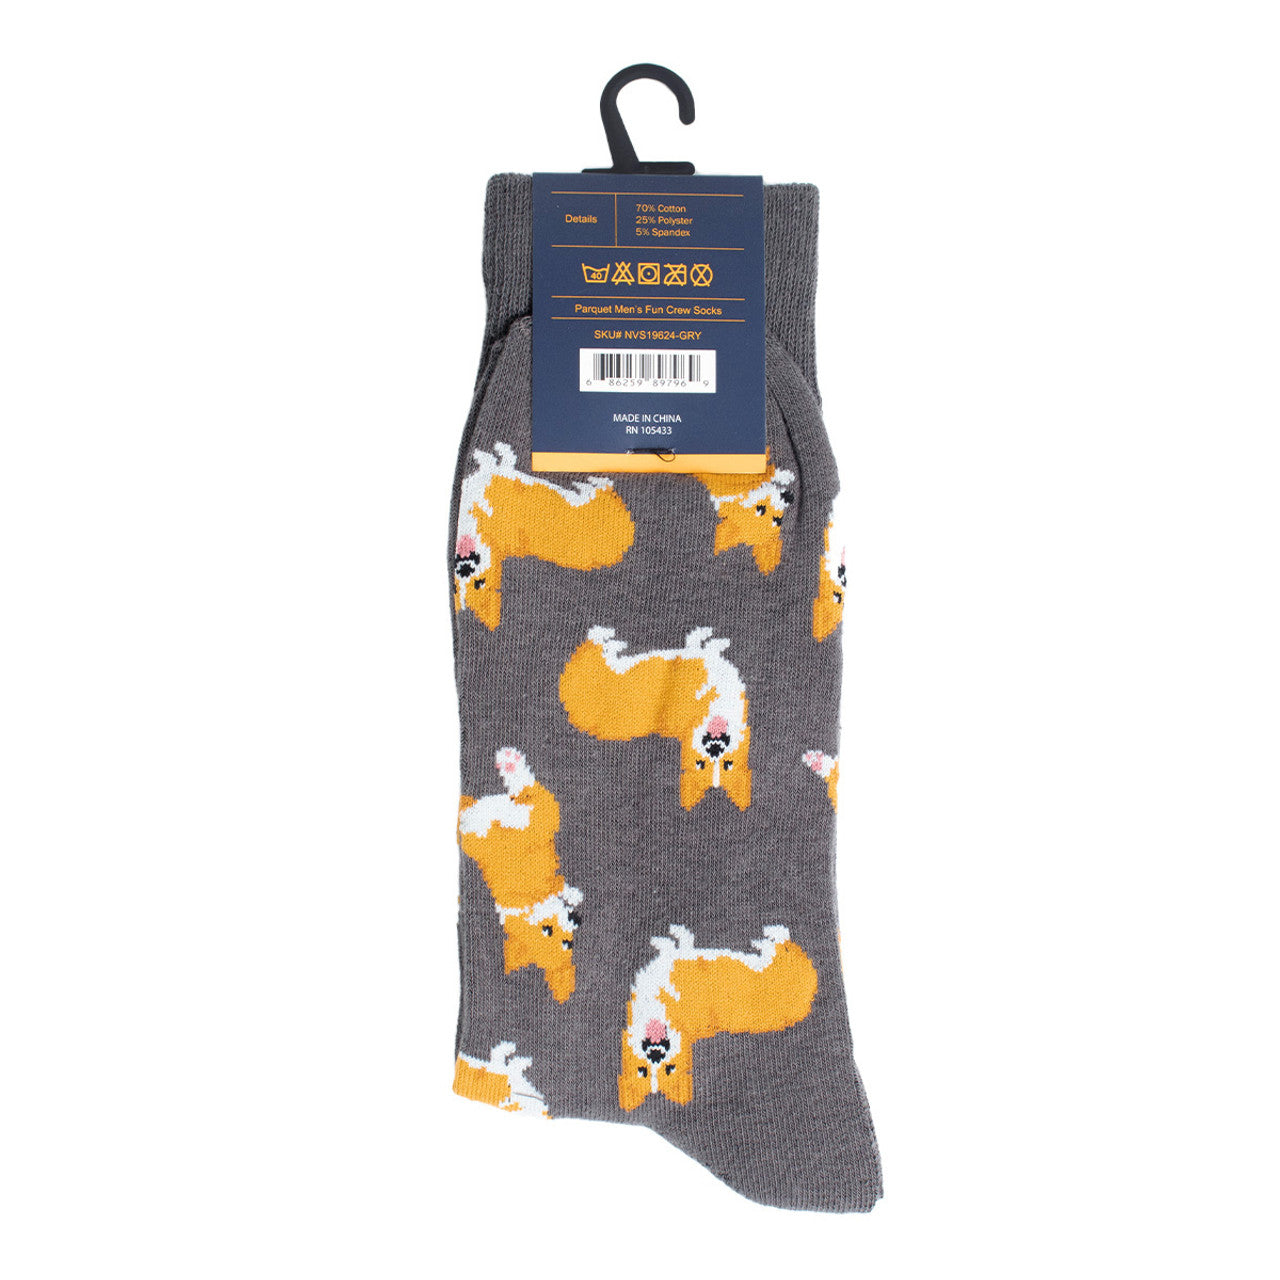 Corgis Dog Fun Socks Men's Dancing Dog Novelty Socks Funny Socks Dad Gifts Cool Socks Funny Groomsmen